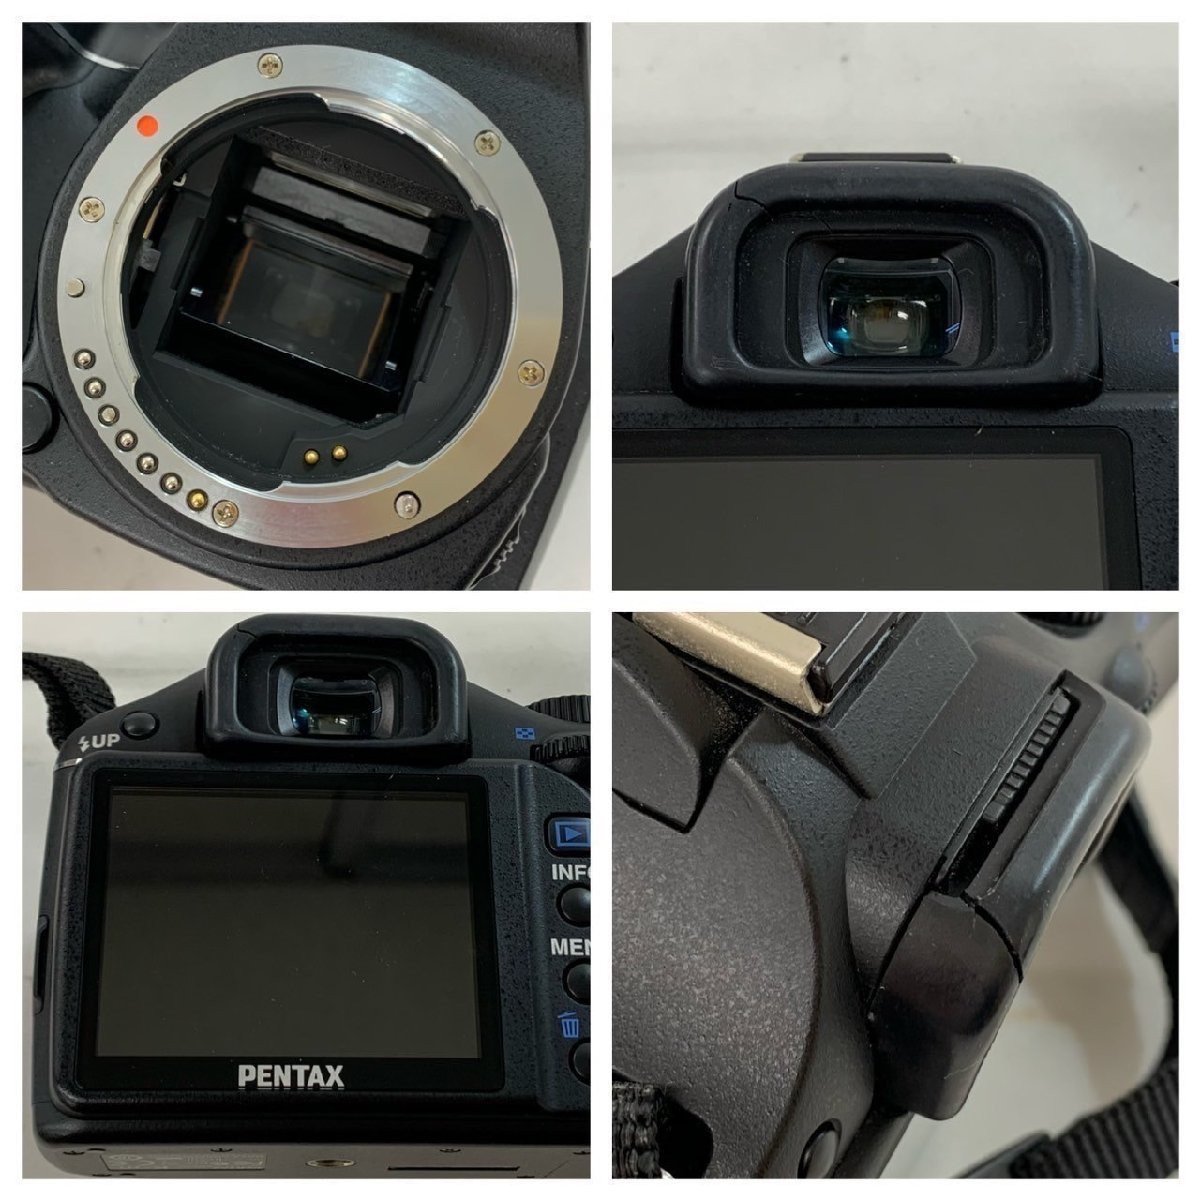 【中古品】【ジャンク品】(3点set)PENTAX デジタルカメラ[K-m]レンズ[1:4-5.6/50-200mm ED][1:3.5-5.6/18-55mm AL]【送料別】TD0225_画像3